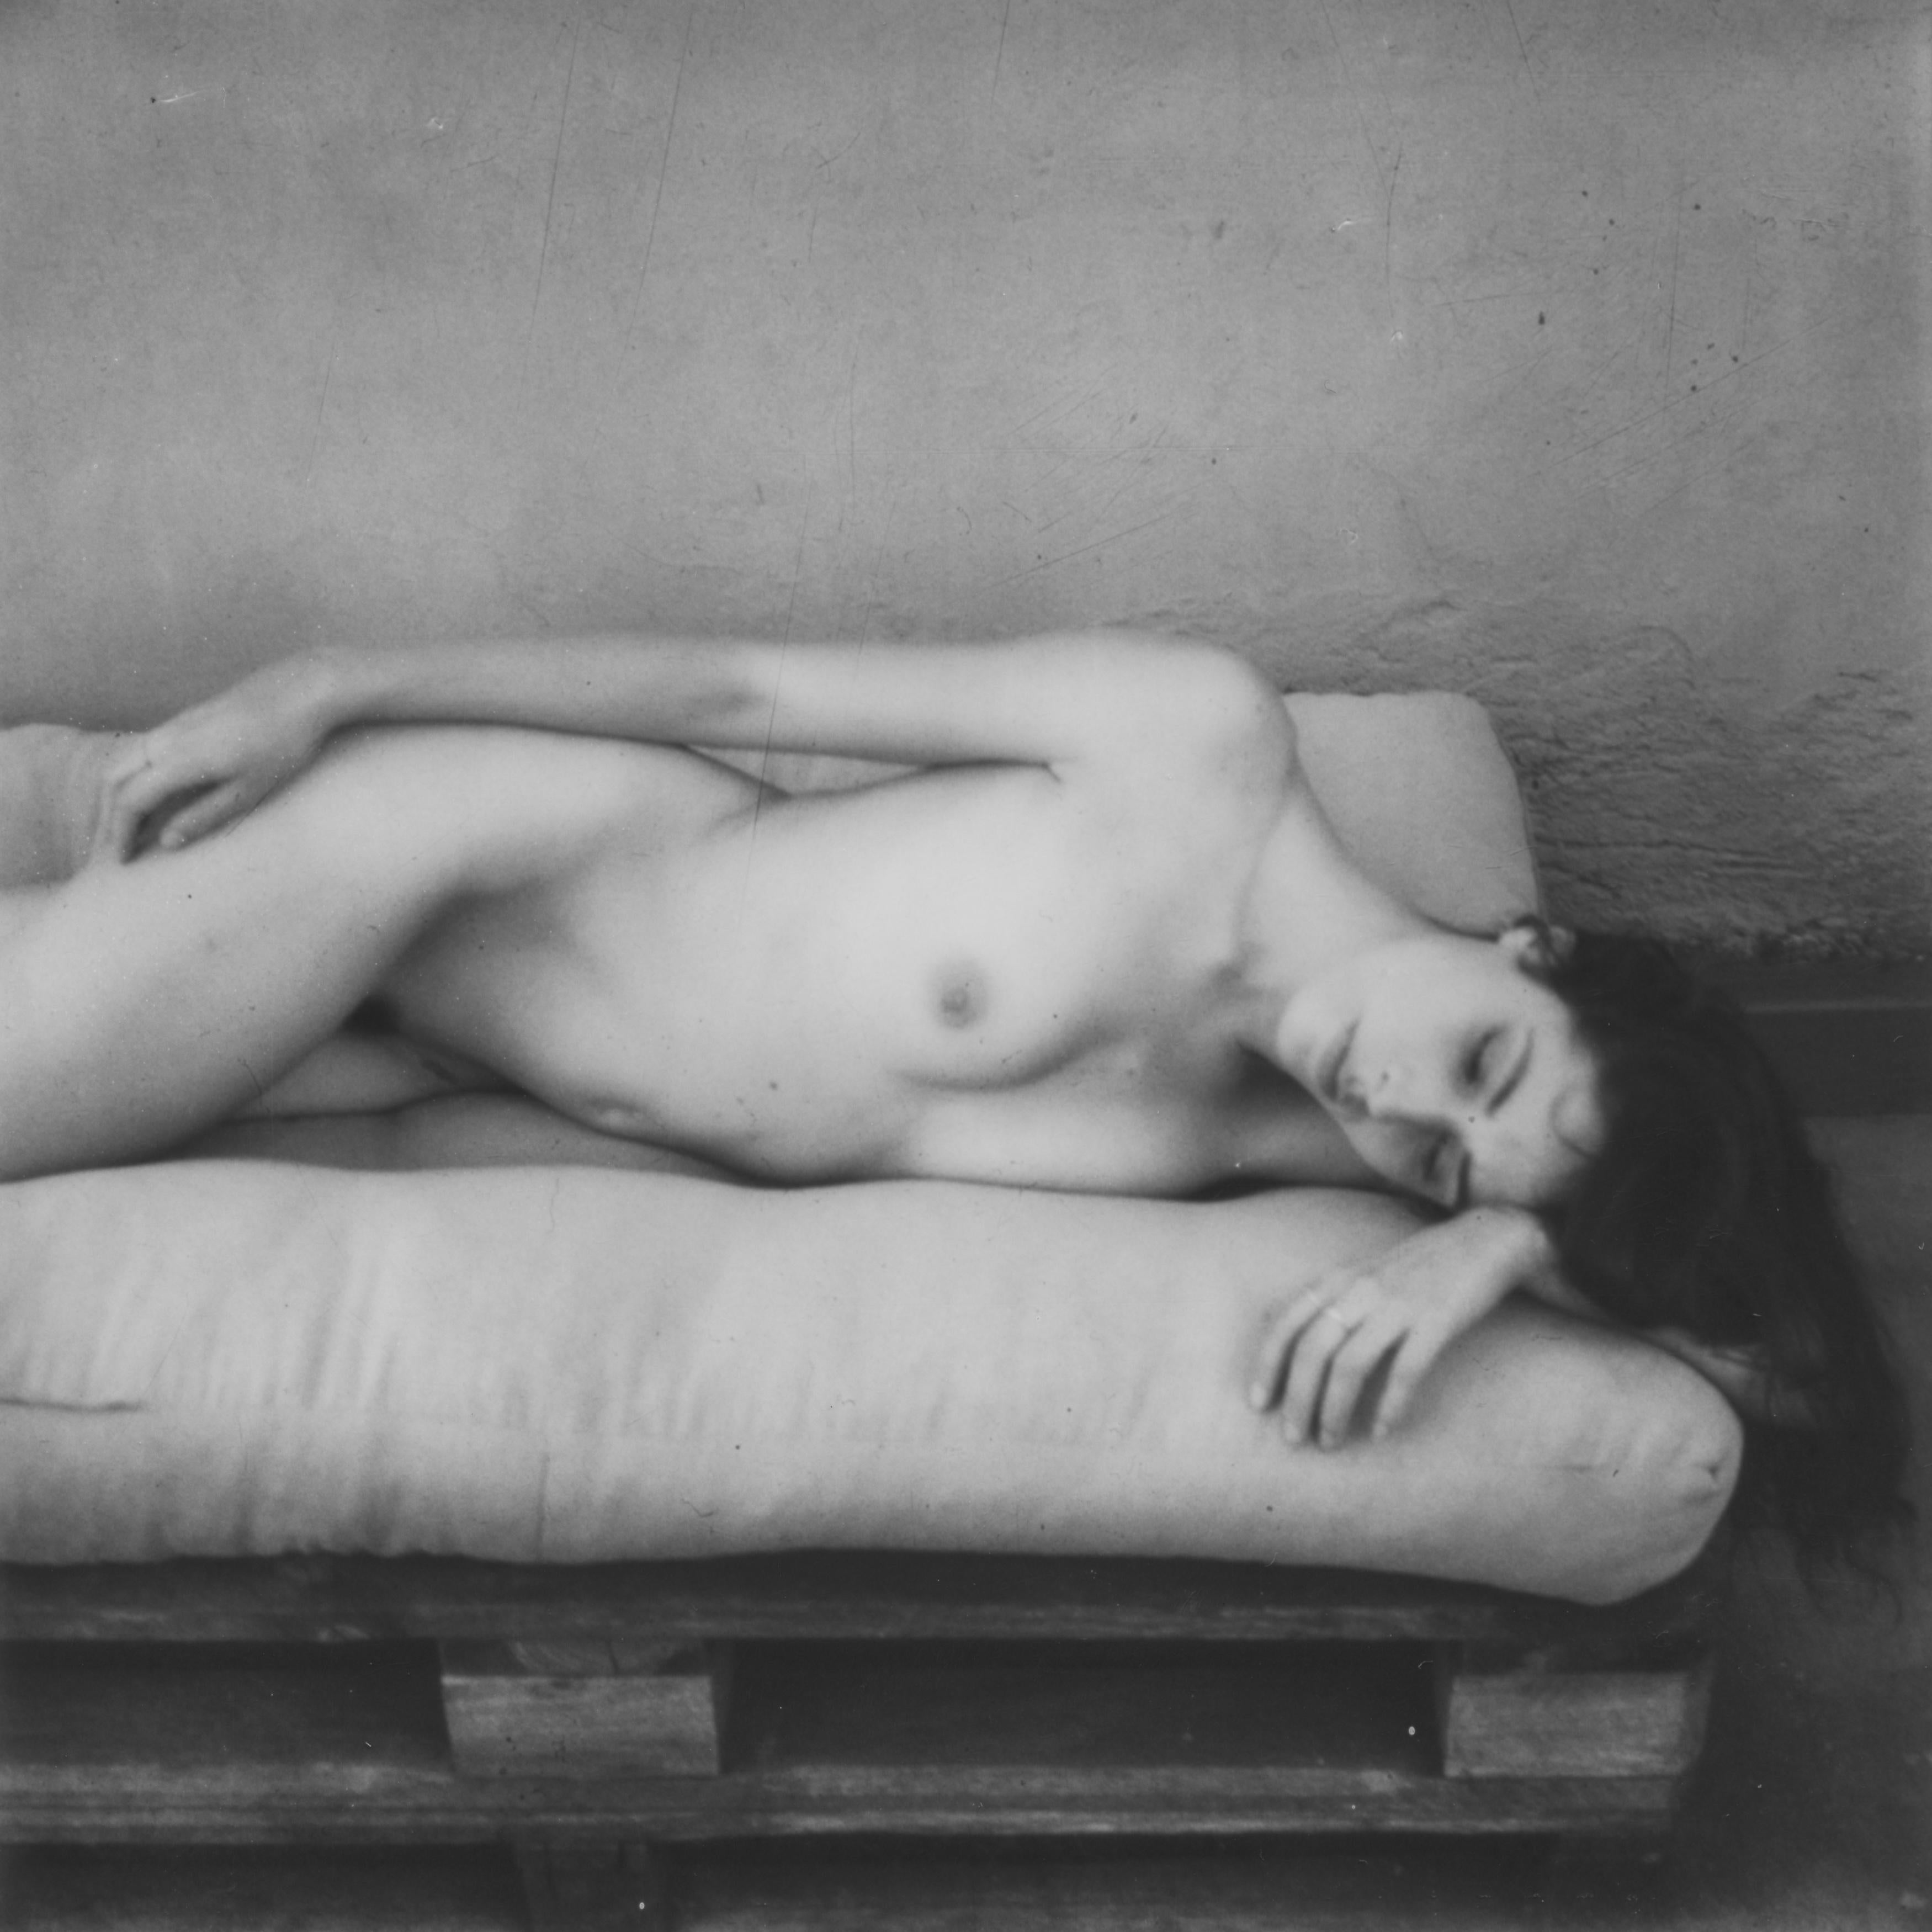 Being - Zeitgenössisch, Frauen, Polaroid, 21. Jahrhundert, Nackt